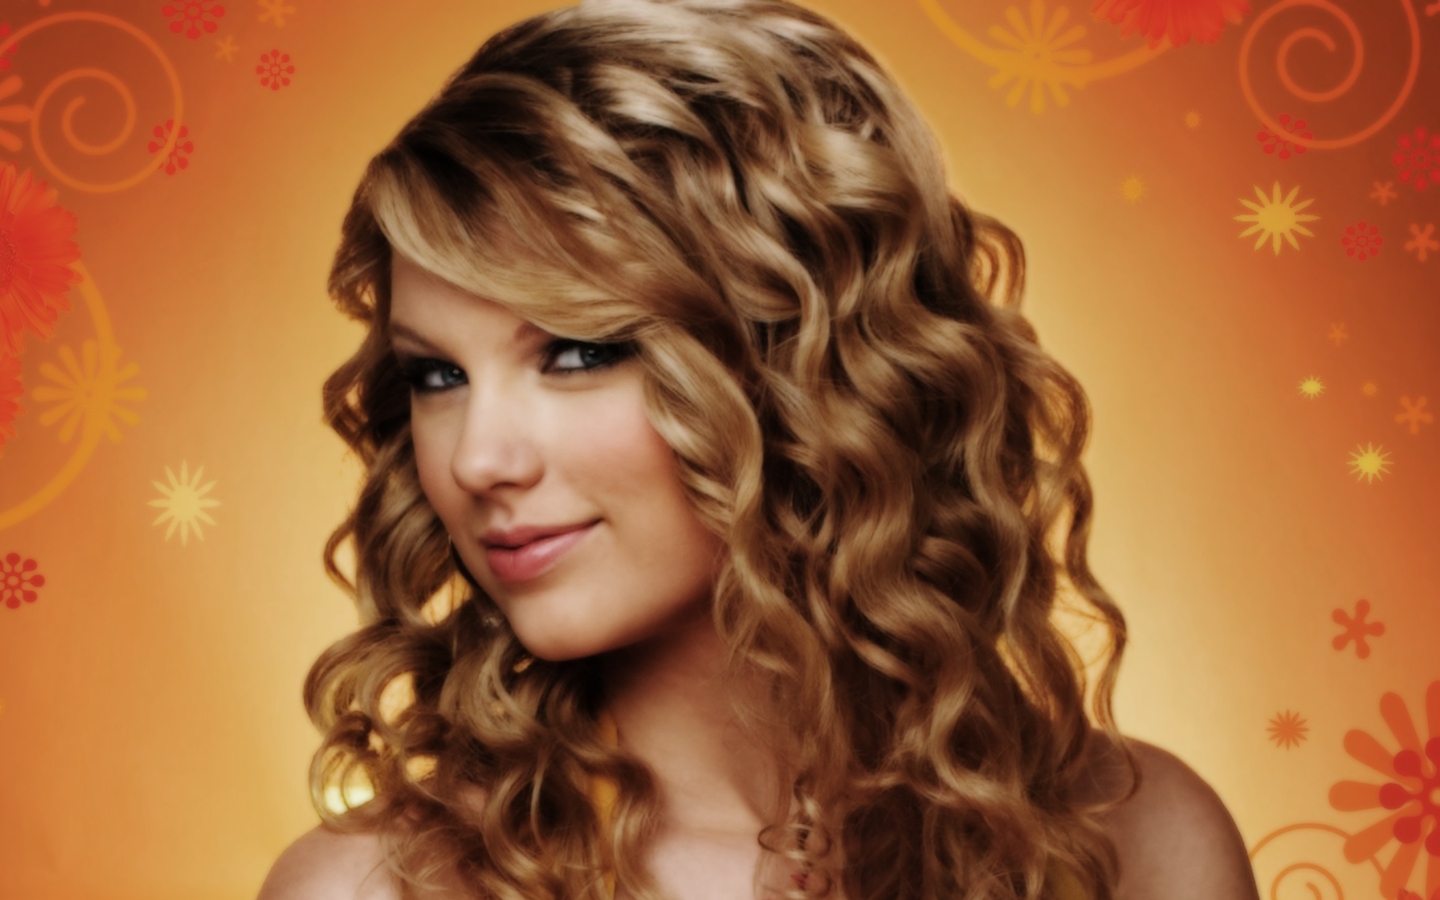 Taylor Swift HD Wallpaper For Desktop iPhone It Is